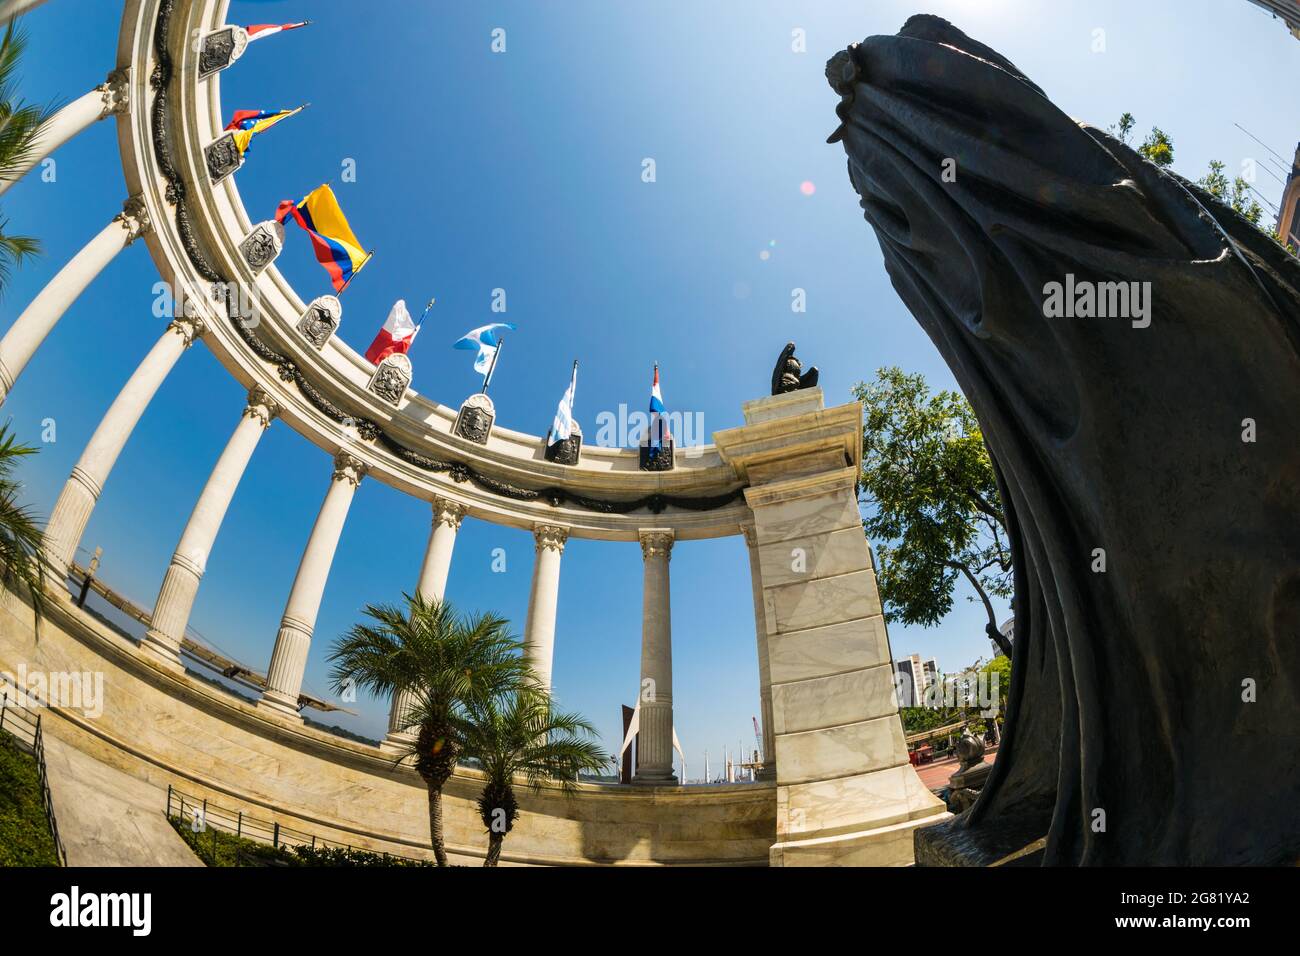 Monumento la rotonda a Malecon Simon Bolivar, Guayaquil, Ecuador. Una giornata di sole senza nuvole di questo luogo molto turistico. Foto Stock